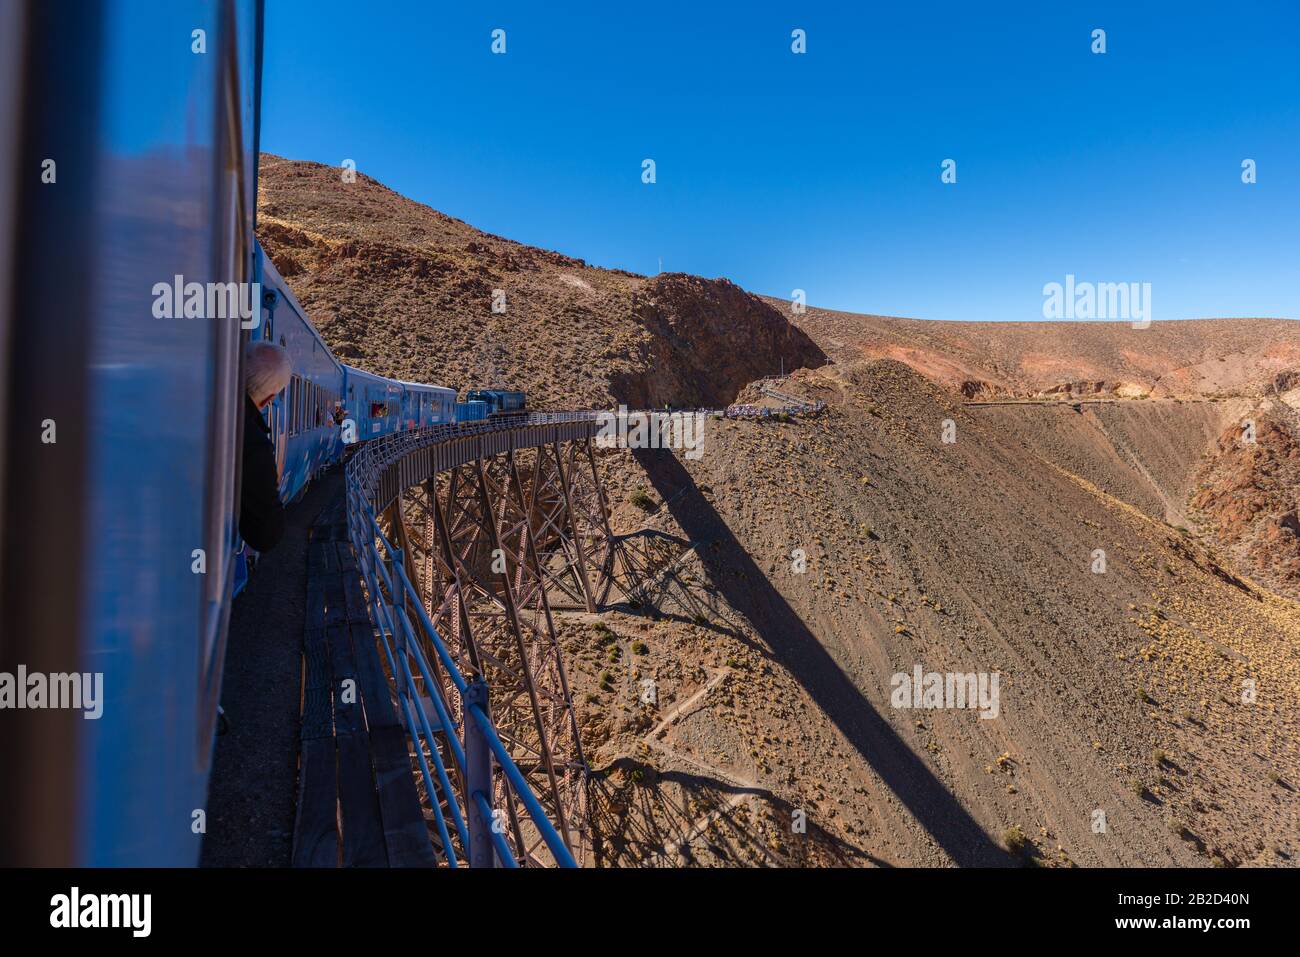 Viaducto La Polvorilla, 4200 m als, Endstation der "Tren a las Nubes" oder "Zug zu den Wolken" Provinz Salta, Anden, Argentinien, Lateinamerika Stockfoto